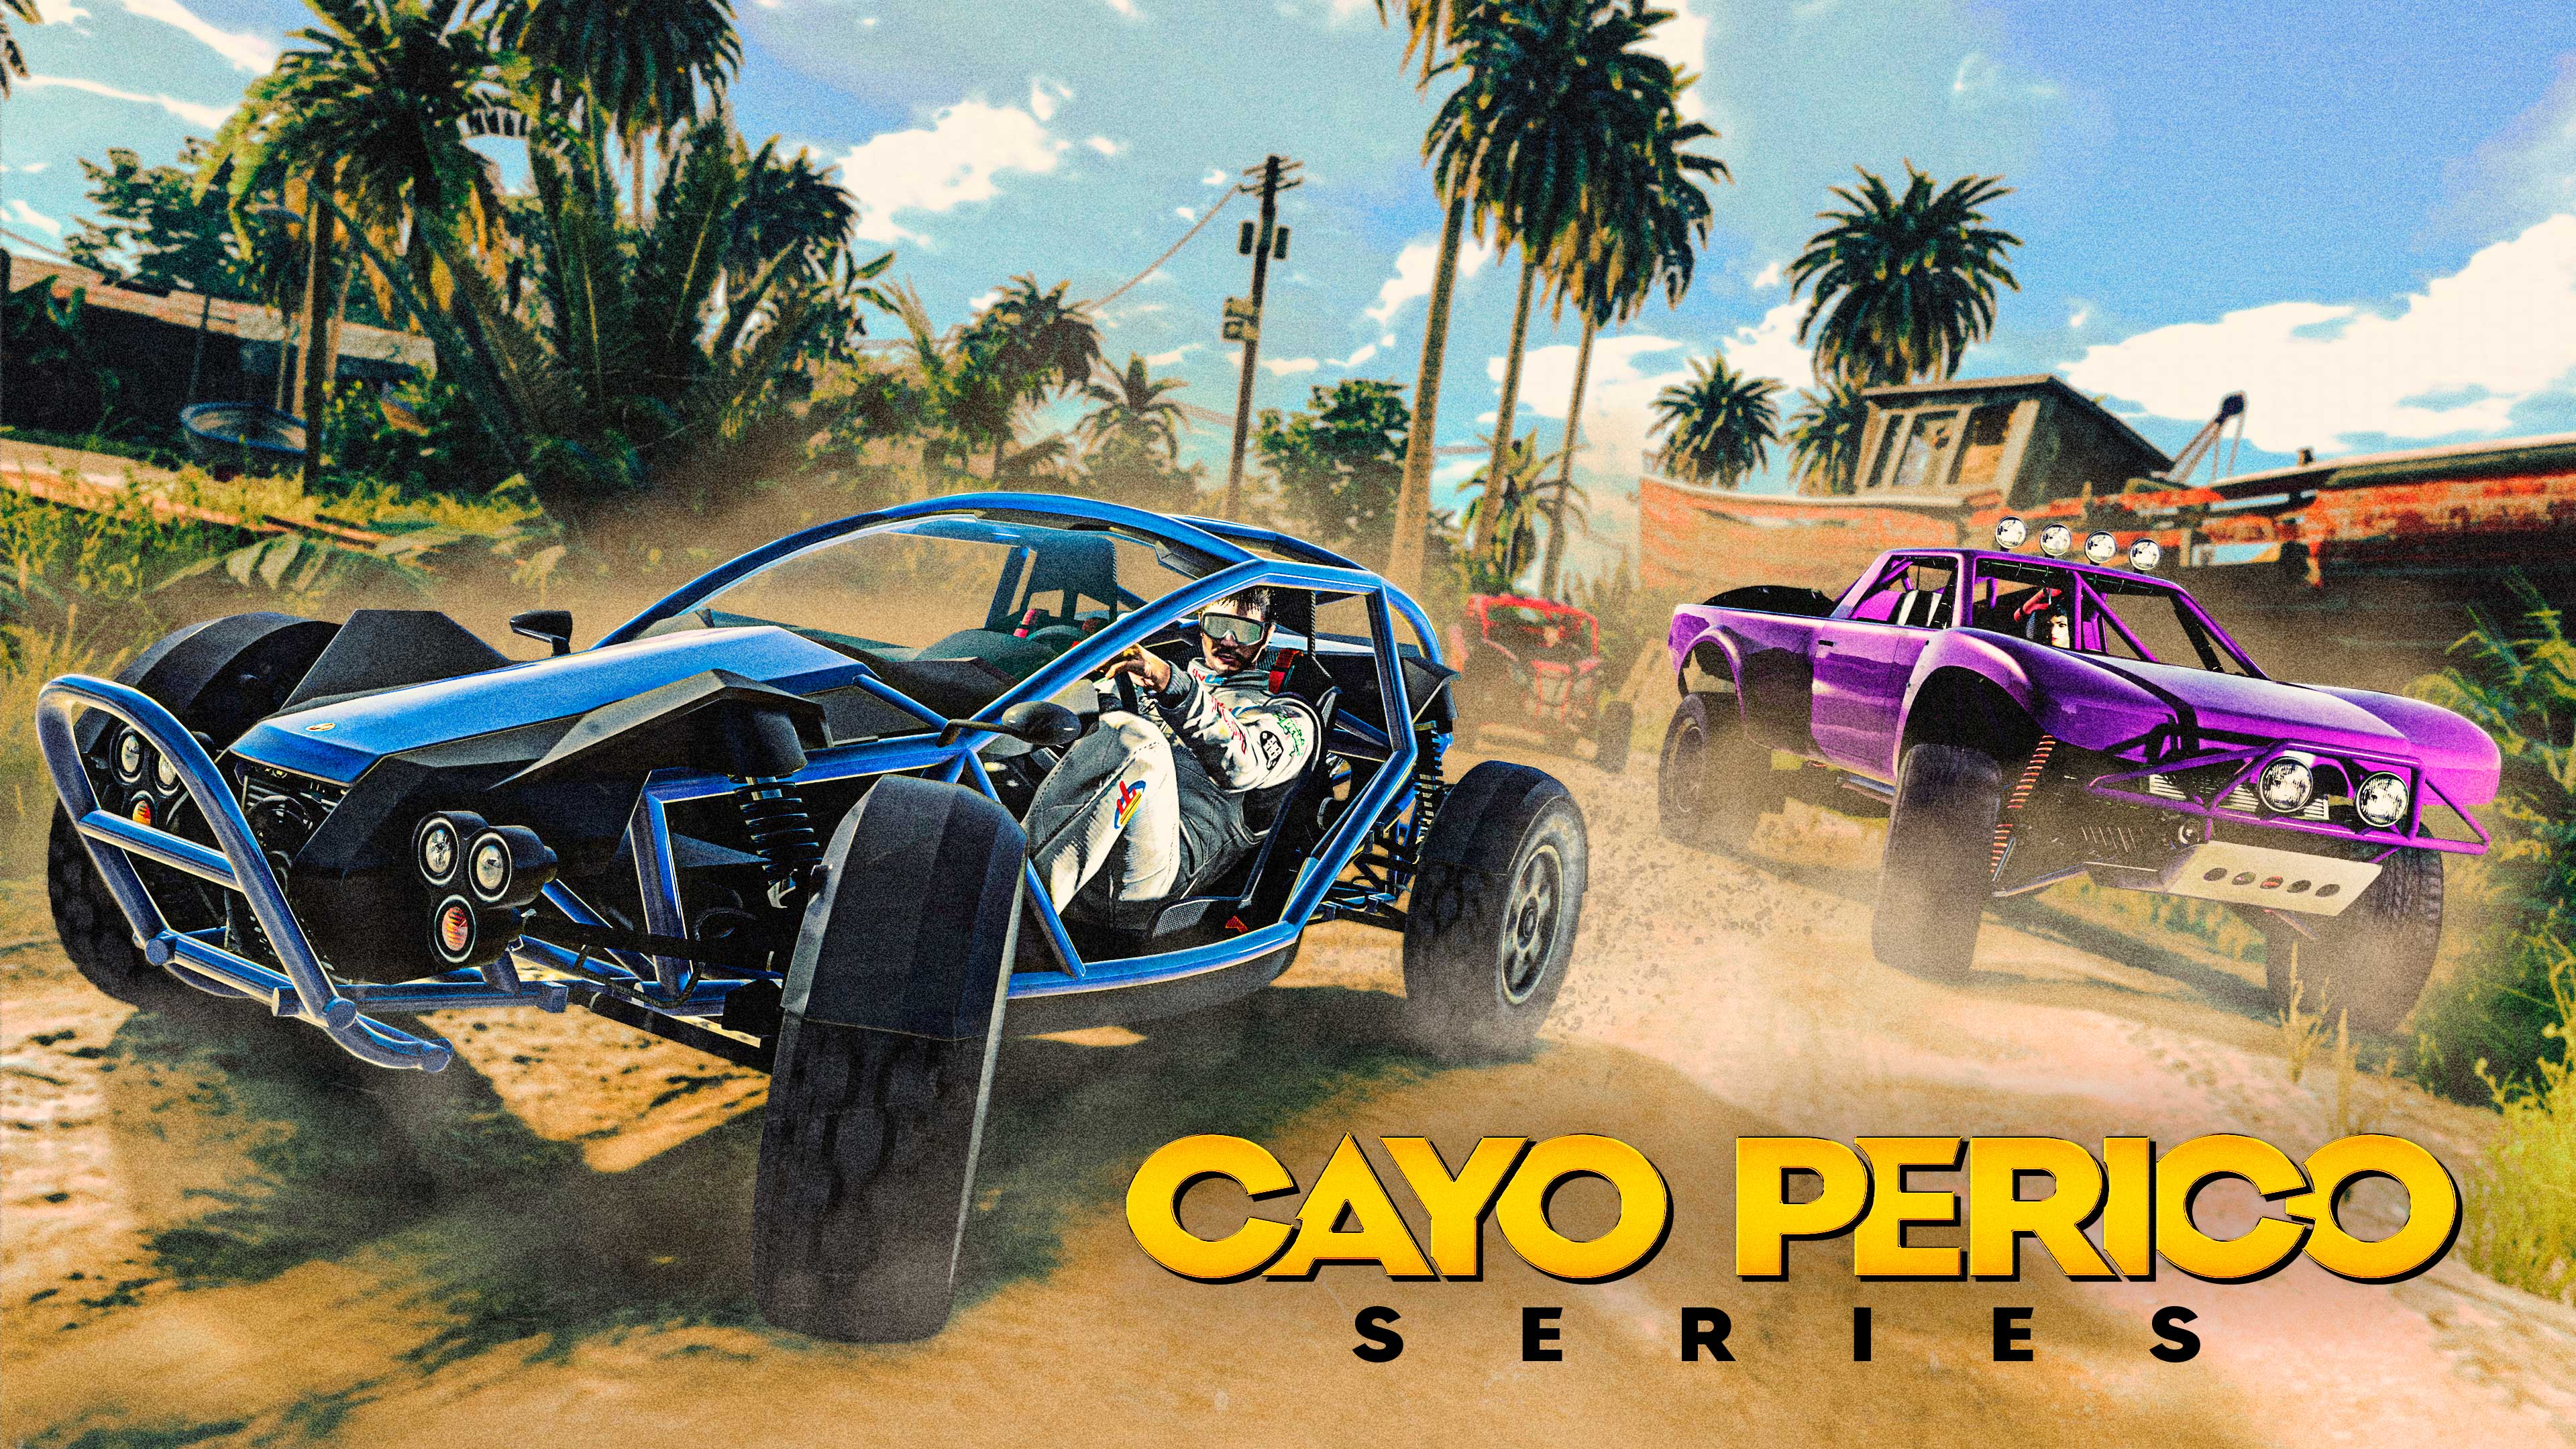 Pôster de Cayo Perico em Série com três veículos off-road acelerando em uma estrada de areia perto de uma carcaça de navio.